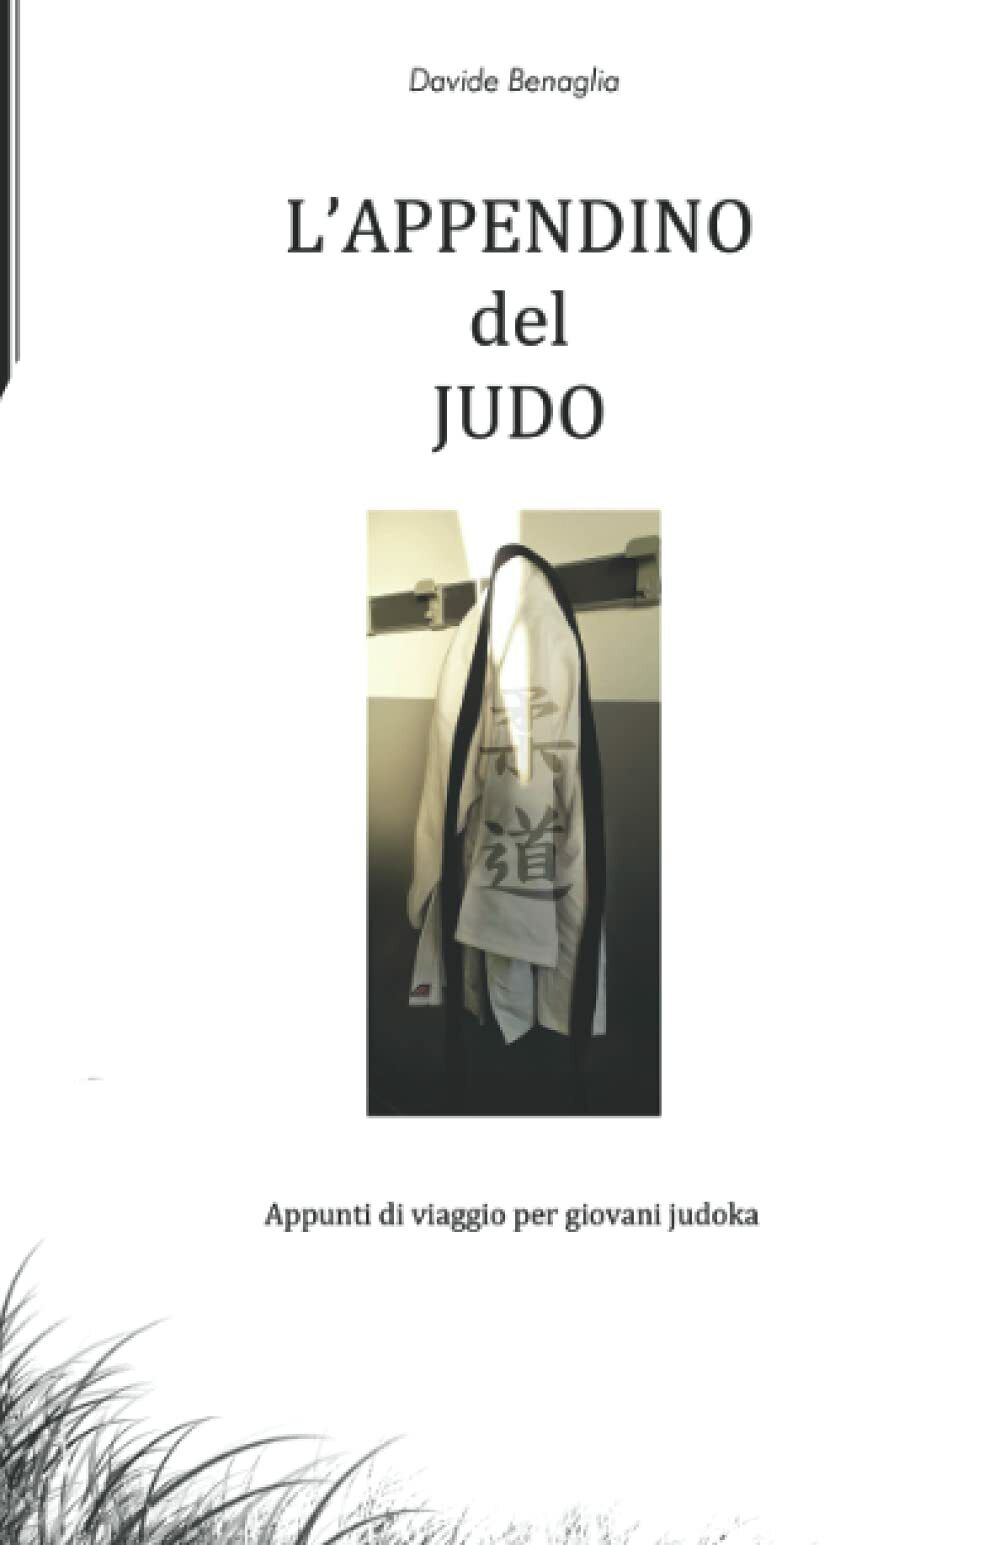 L'appendino del JUDO - Davide Benaglia - Independently published, 2020